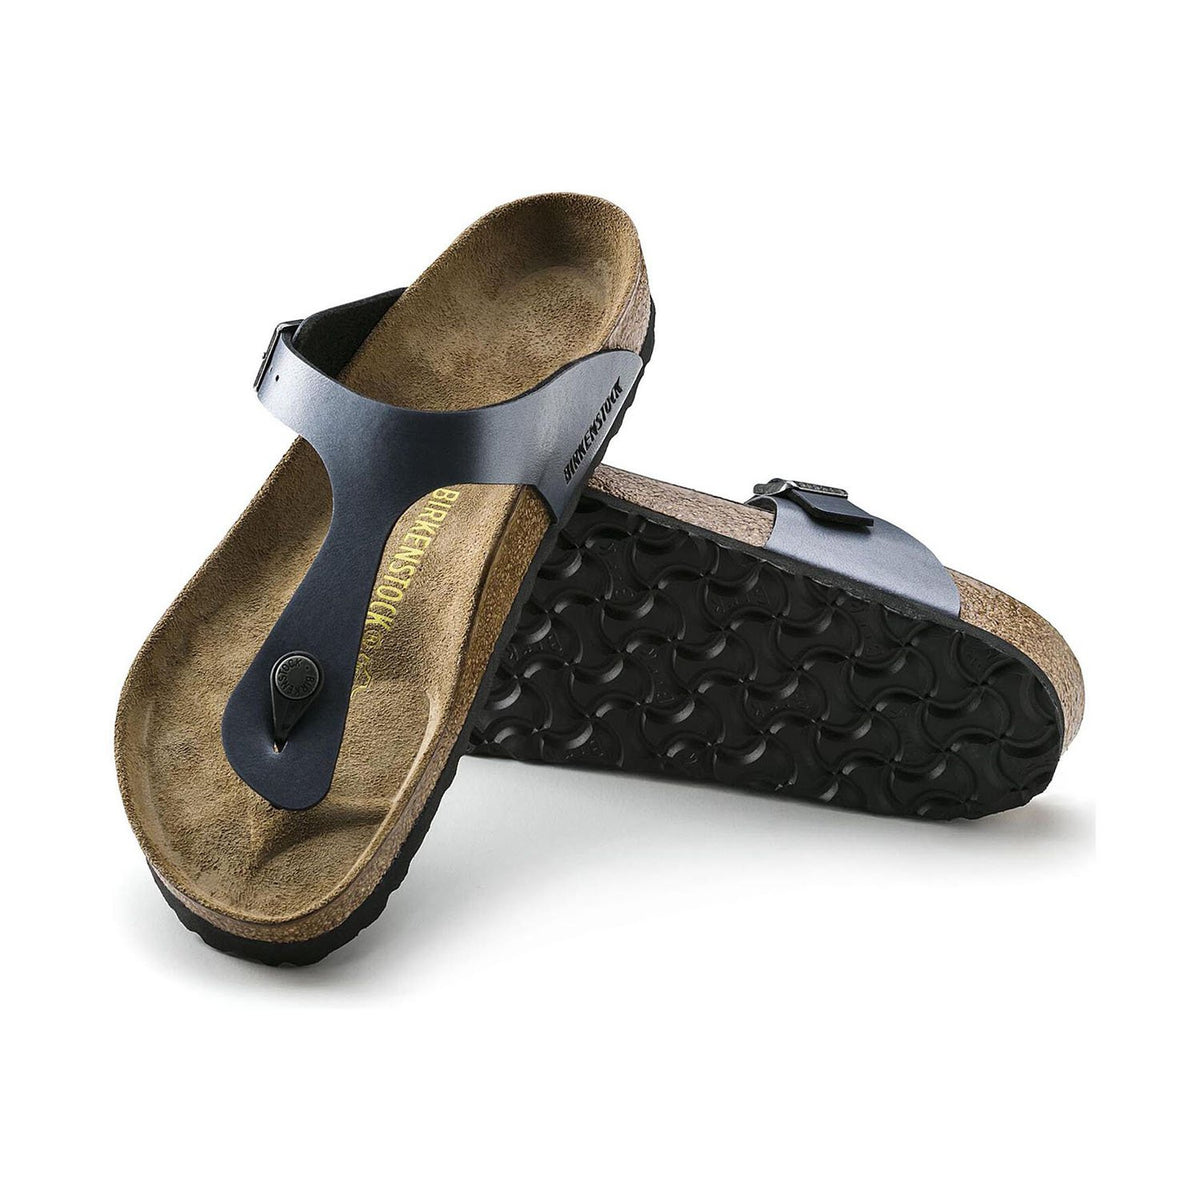 Birkenstock Gizeh – The Shoe Box